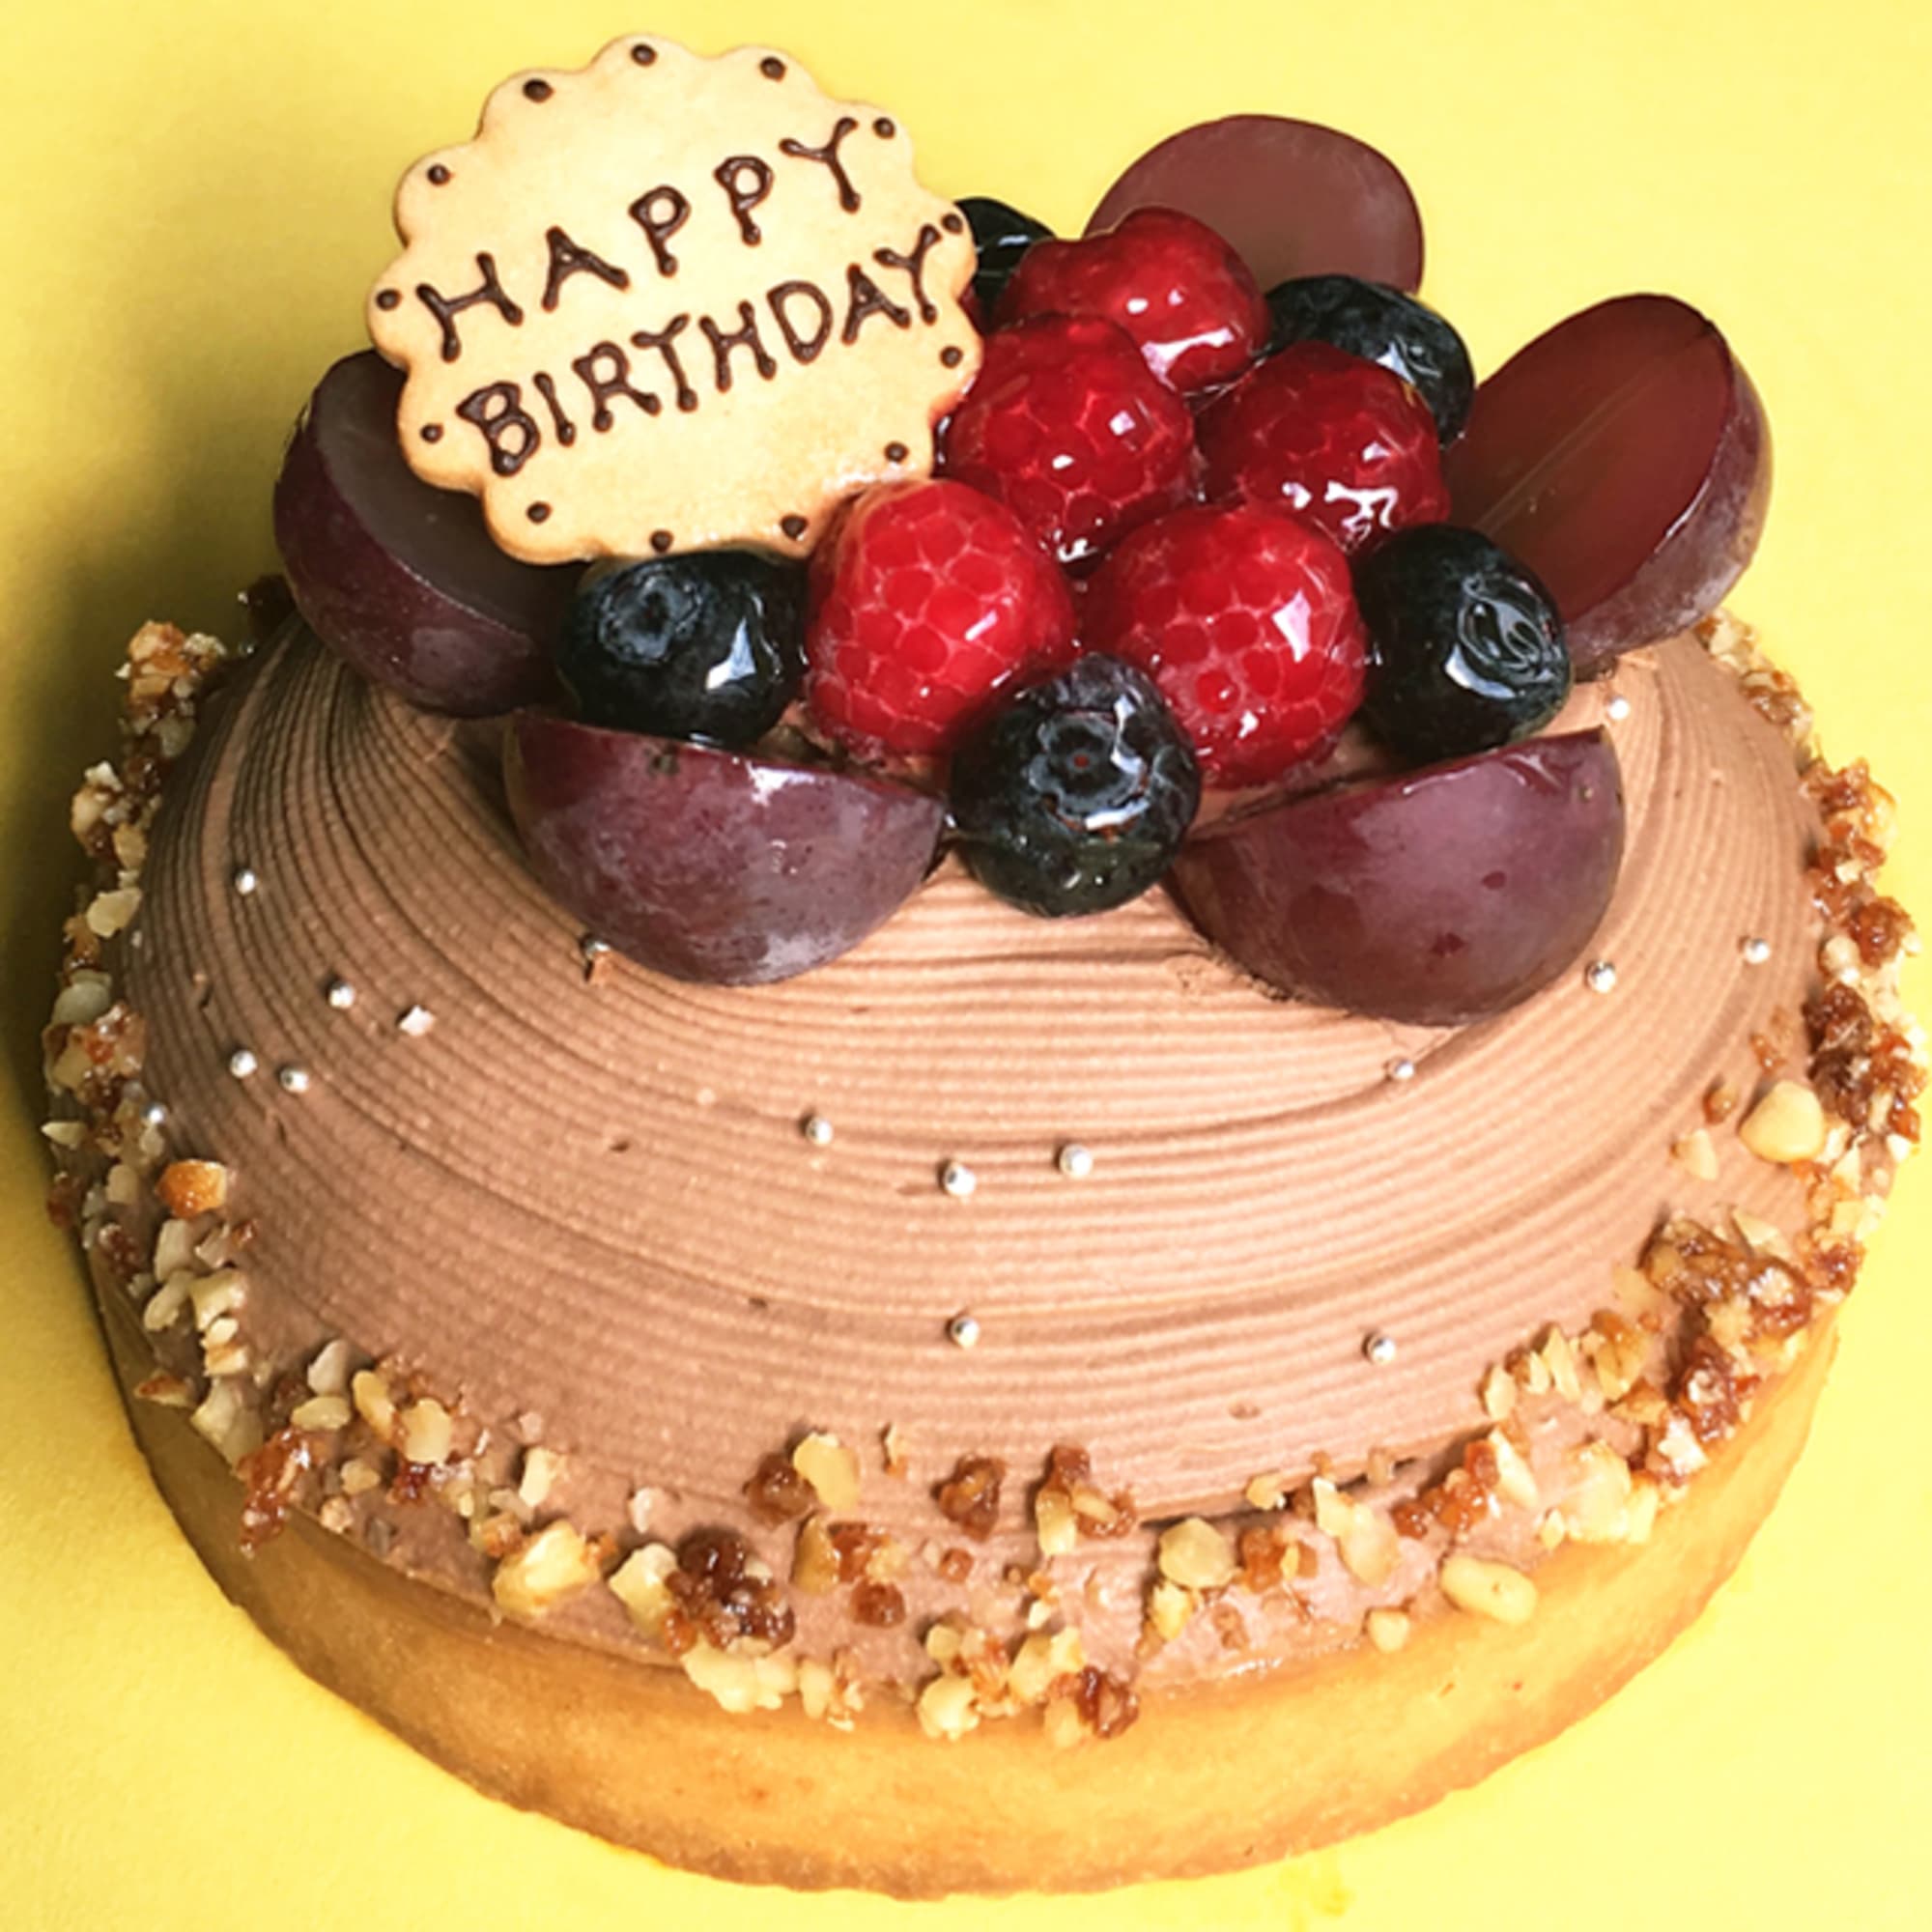 木苺のチョコレートバースデーケーキ14cm 誕生日 記念日 タルト メッセージプレート キャンドル5本付 誕生日ケーキのお店 エスキィスのプレゼント ギフト通販 Tanp タンプ